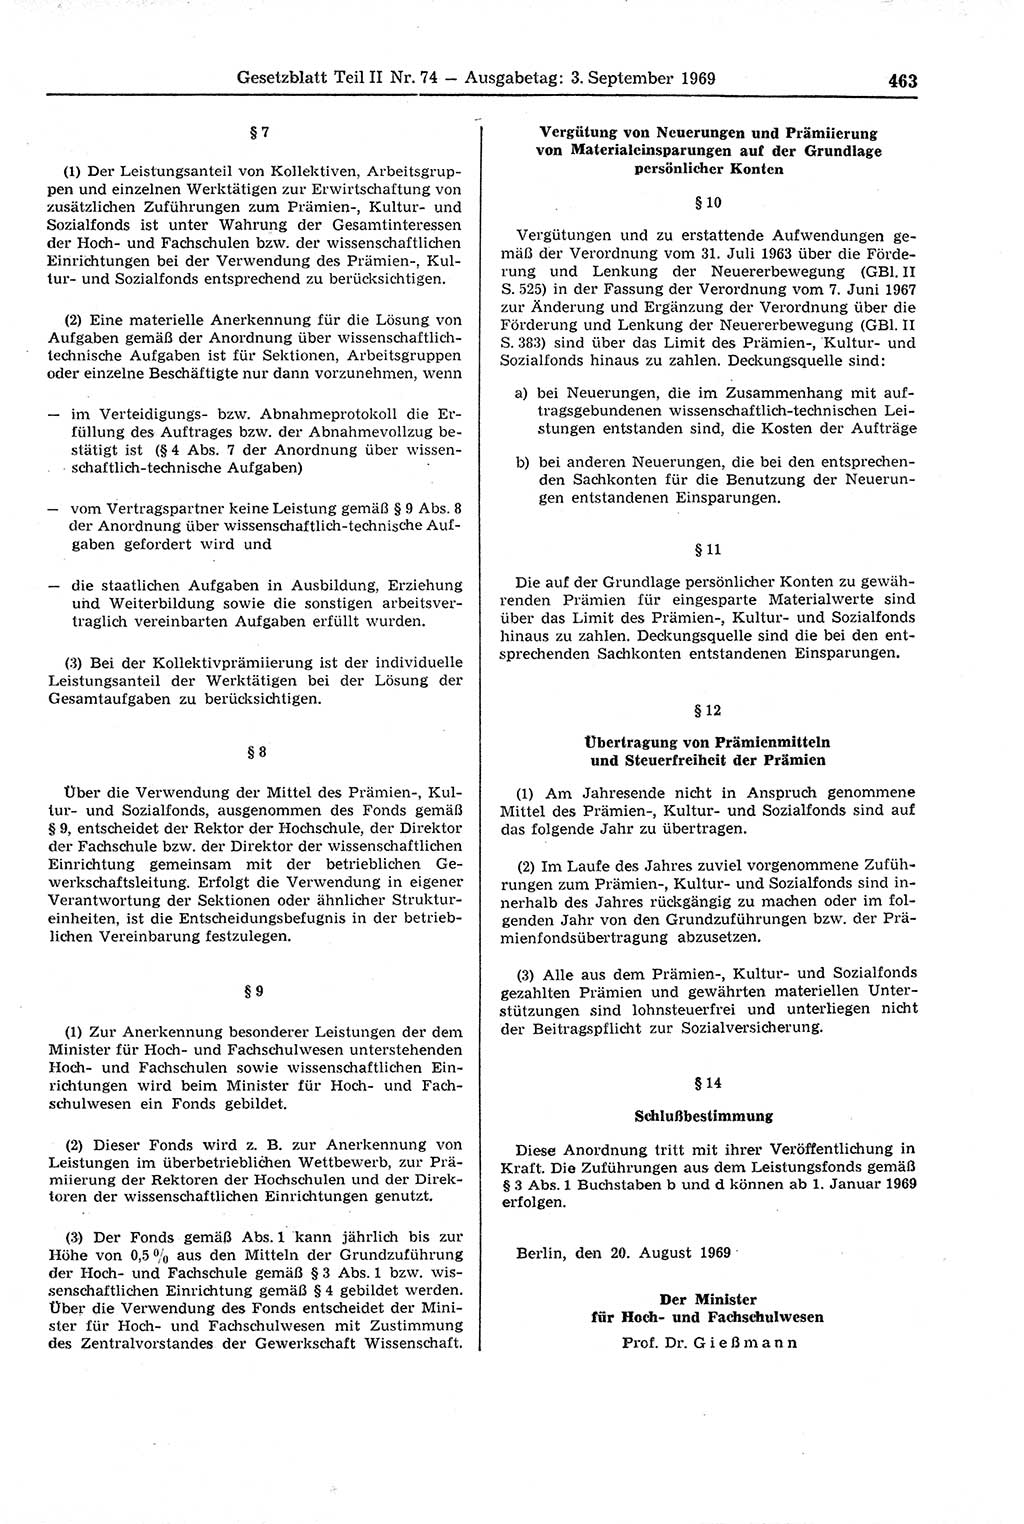 Gesetzblatt (GBl.) der Deutschen Demokratischen Republik (DDR) Teil ⅠⅠ 1969, Seite 463 (GBl. DDR ⅠⅠ 1969, S. 463)